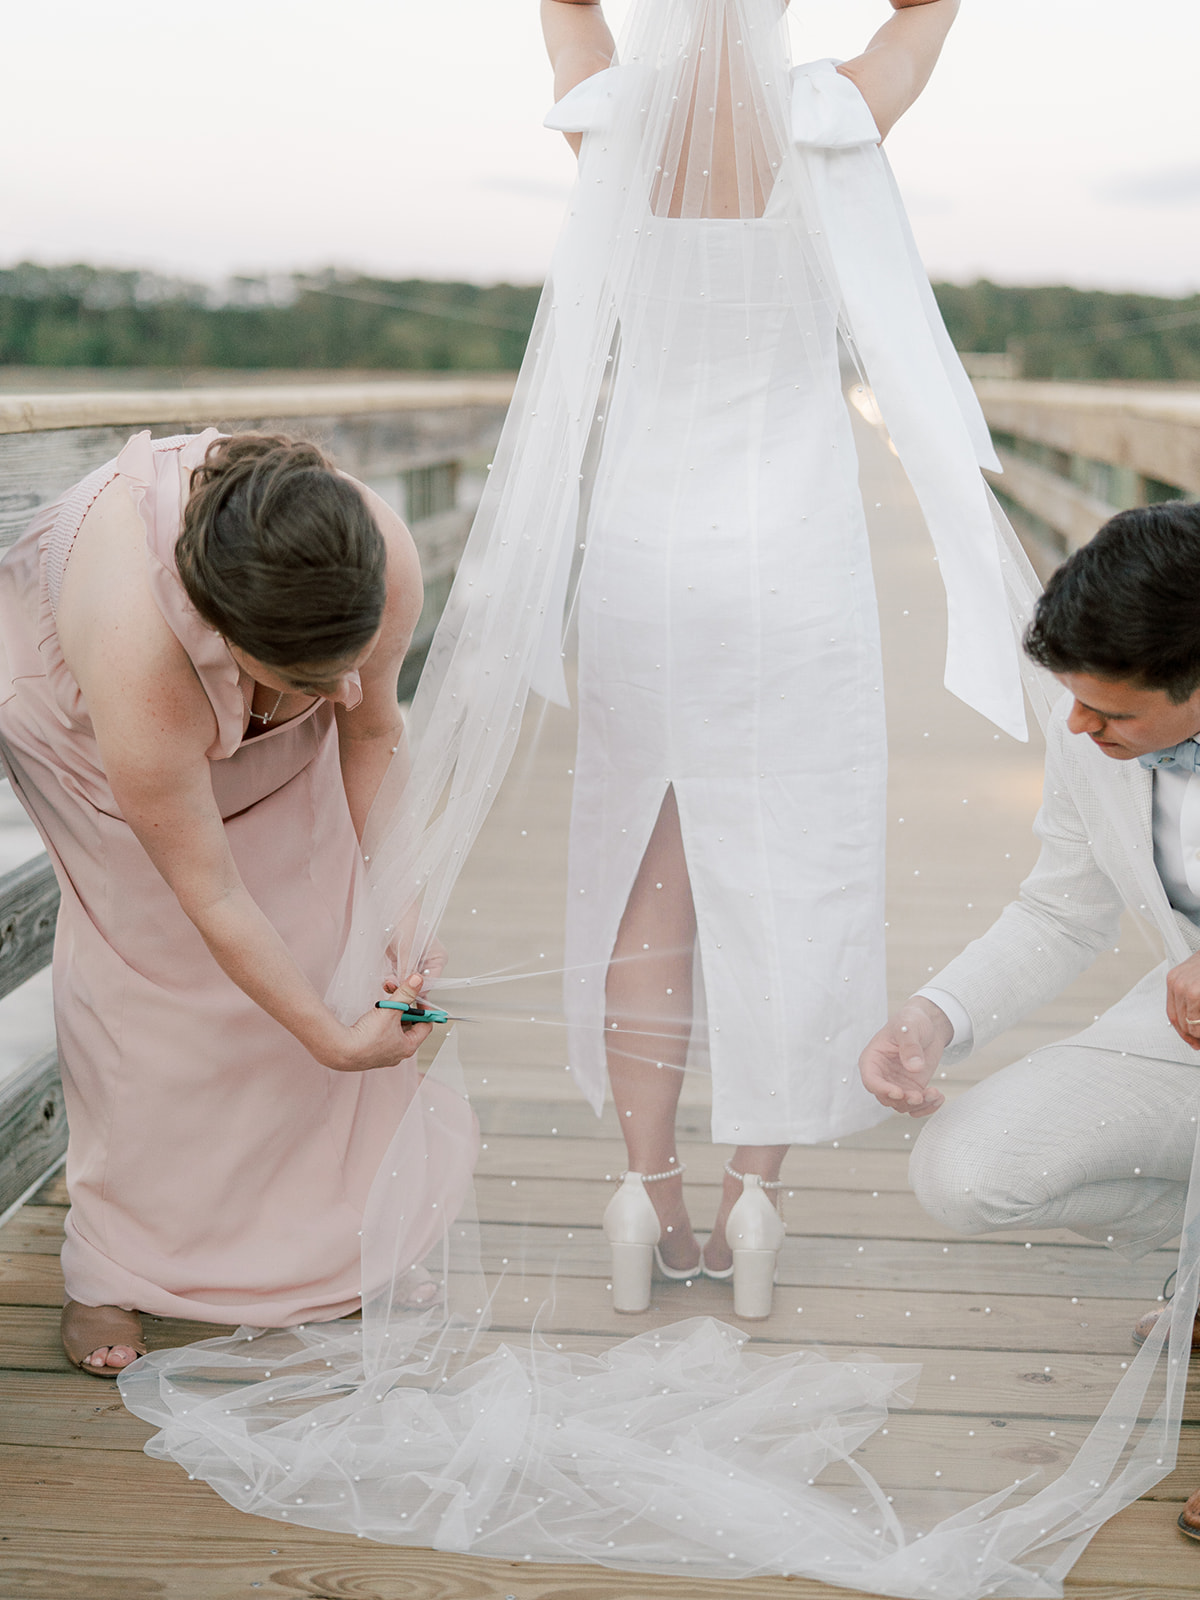 Cutting Bridal Veil at Wedding Reception